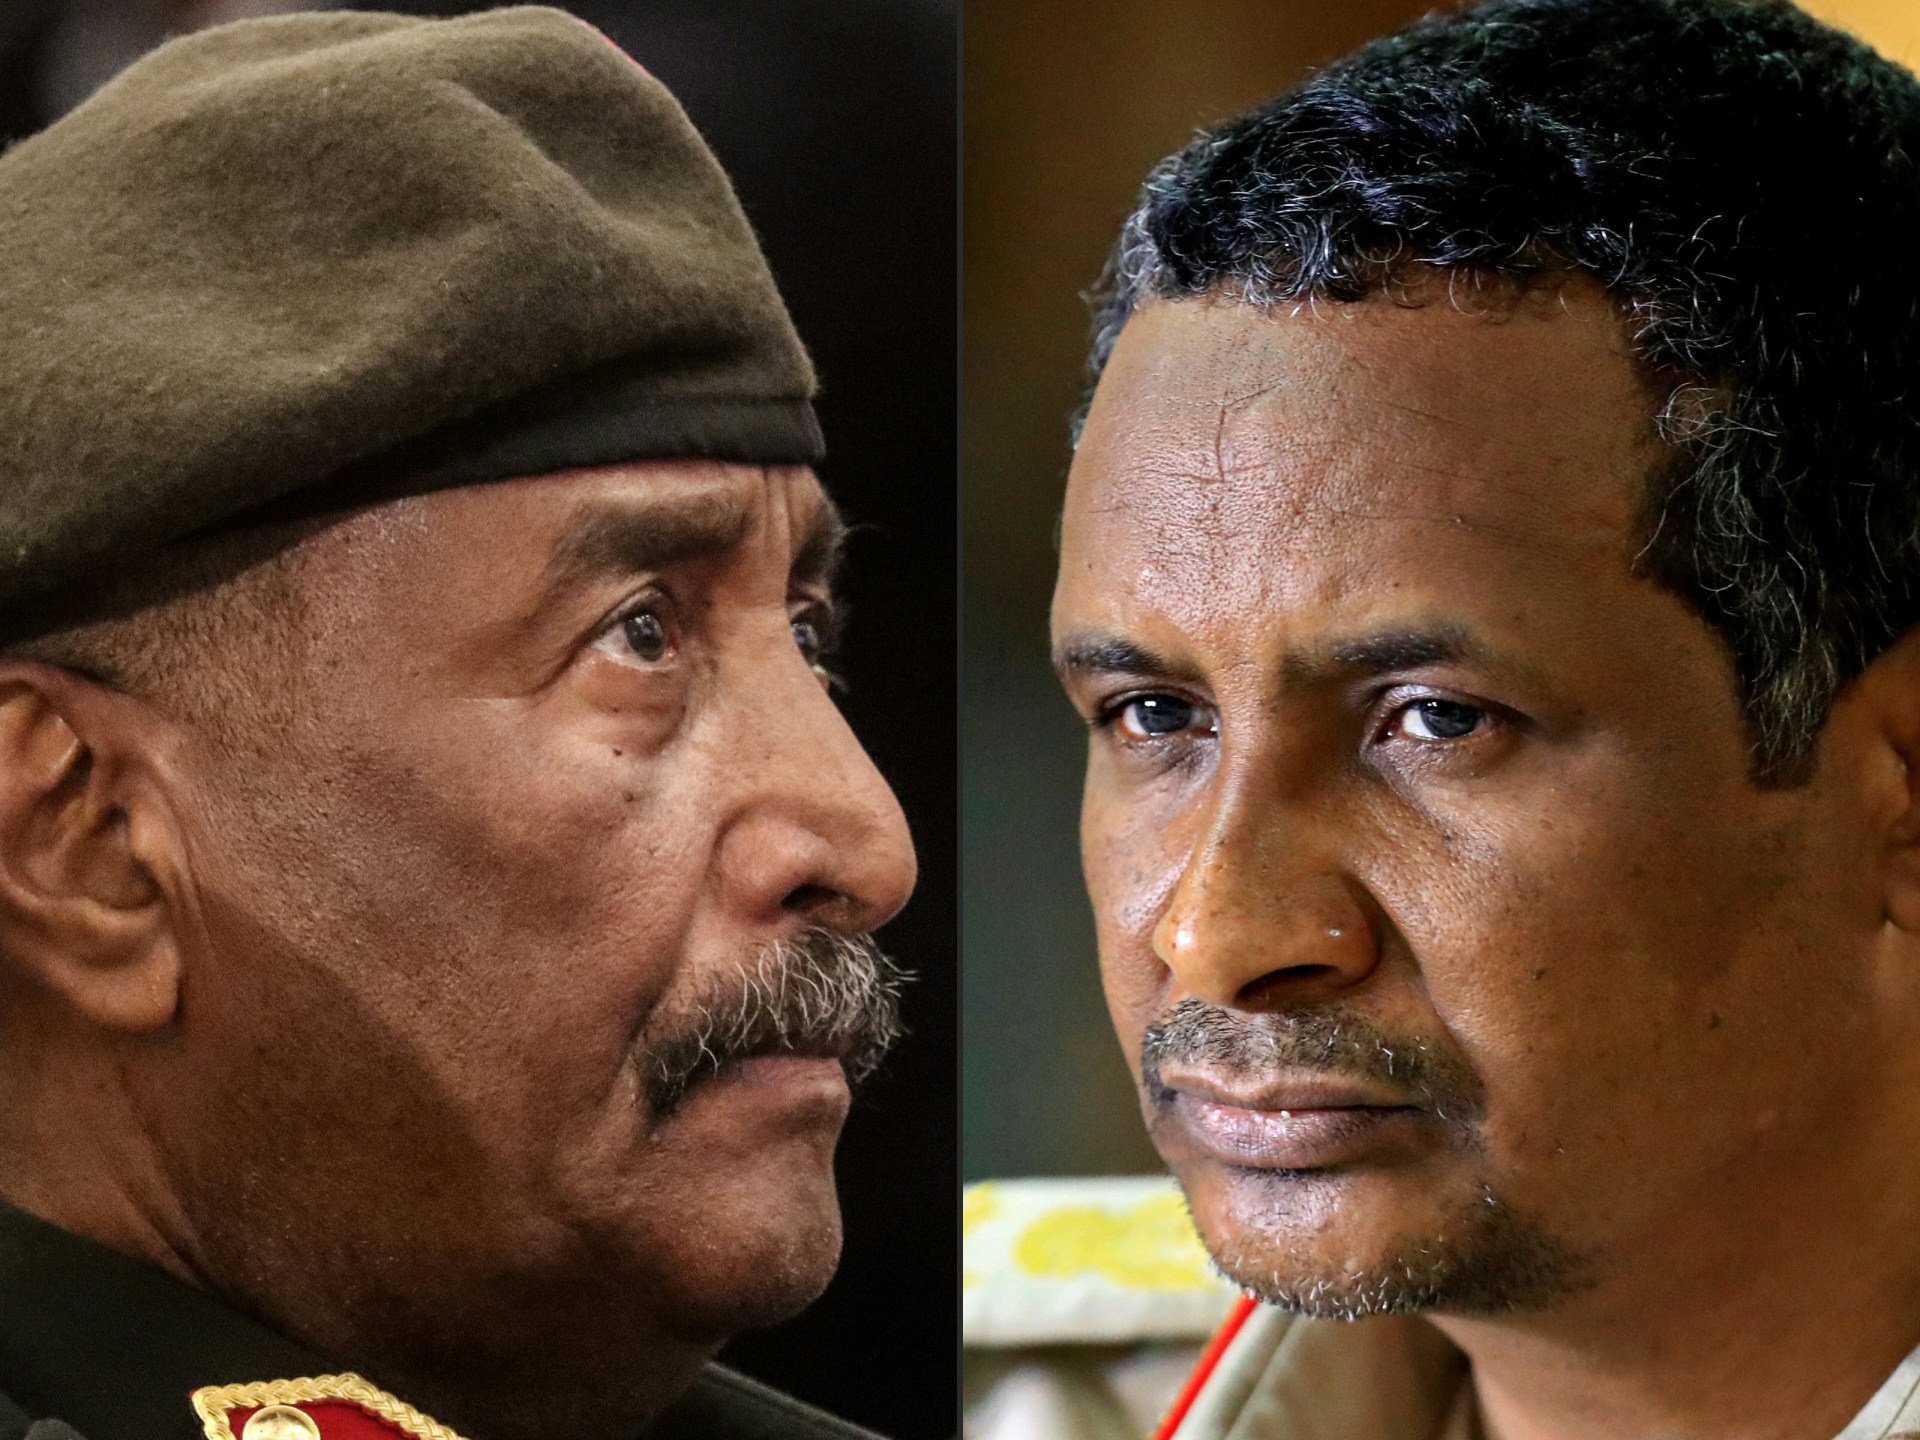 Jenderal Sudan menolak pembicaraan karena gencatan senjata gagal |  Berita